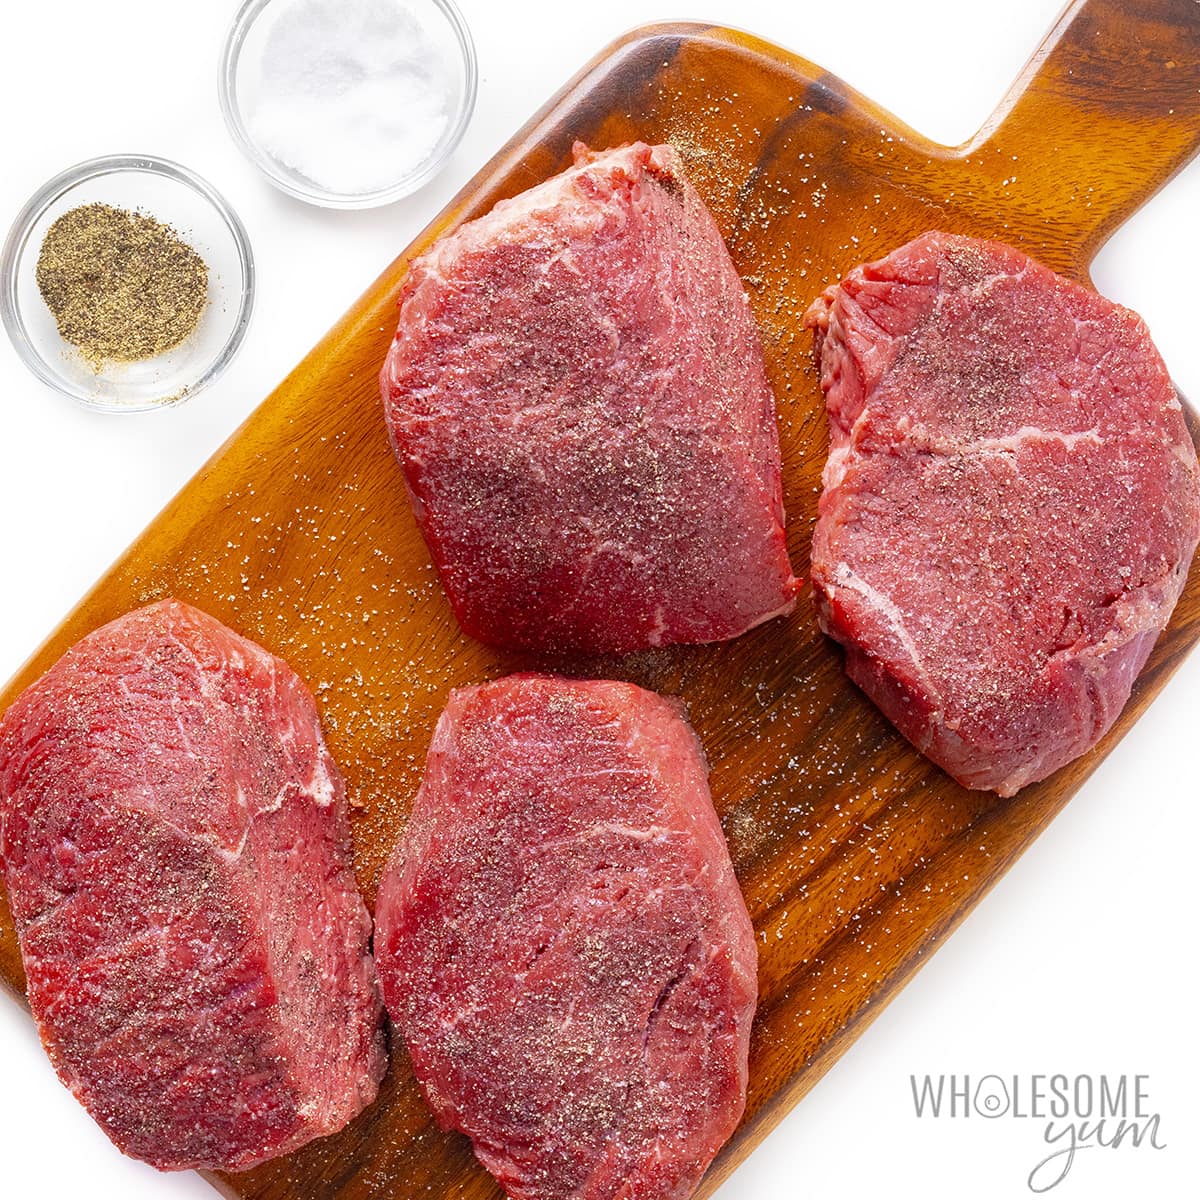 Seasoned steak on cutting board.